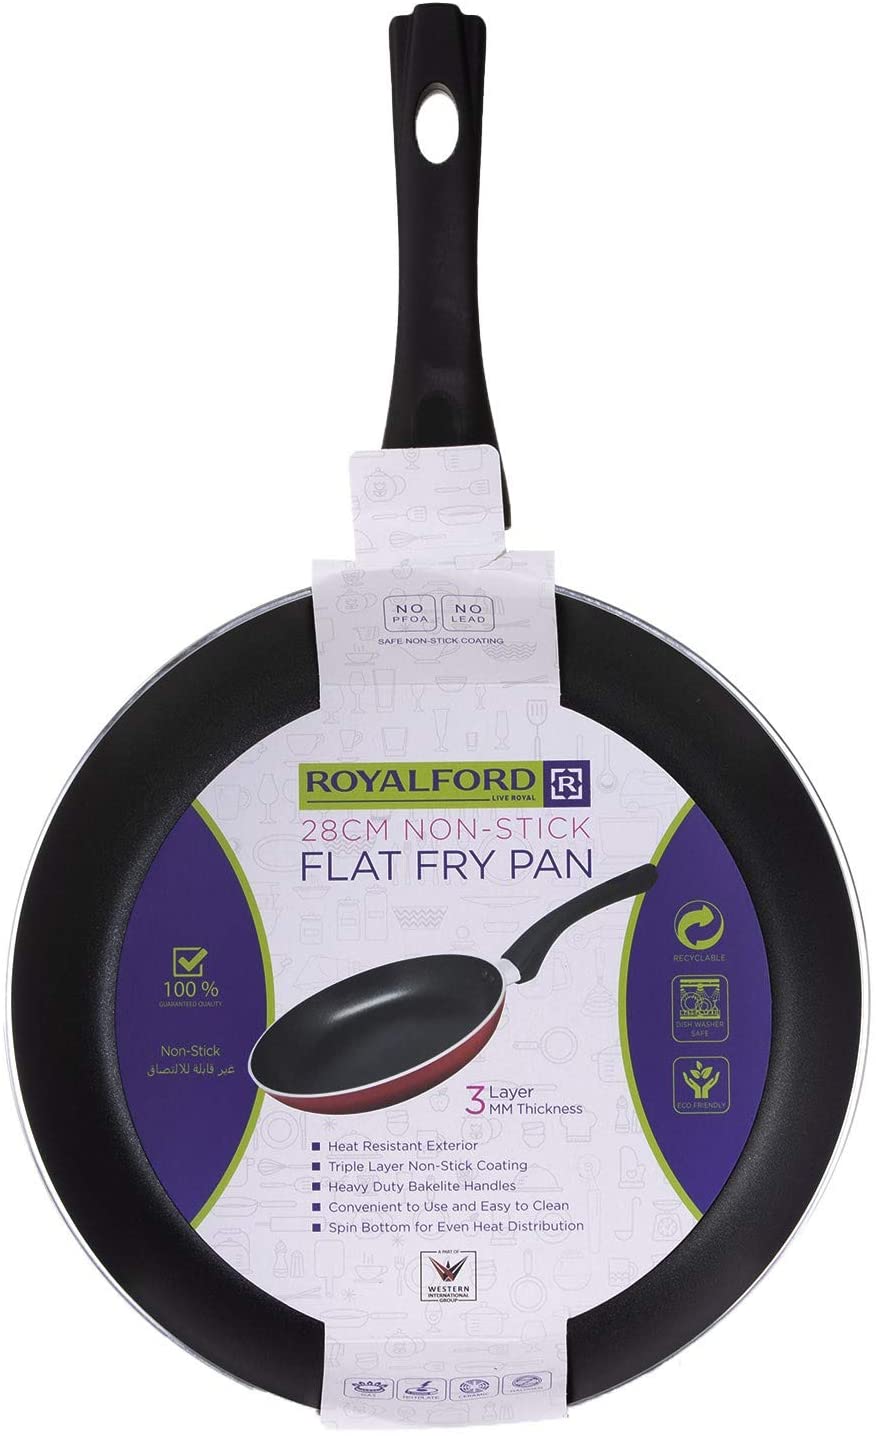 Royalford Non Stick Fry Pan 28 Cm